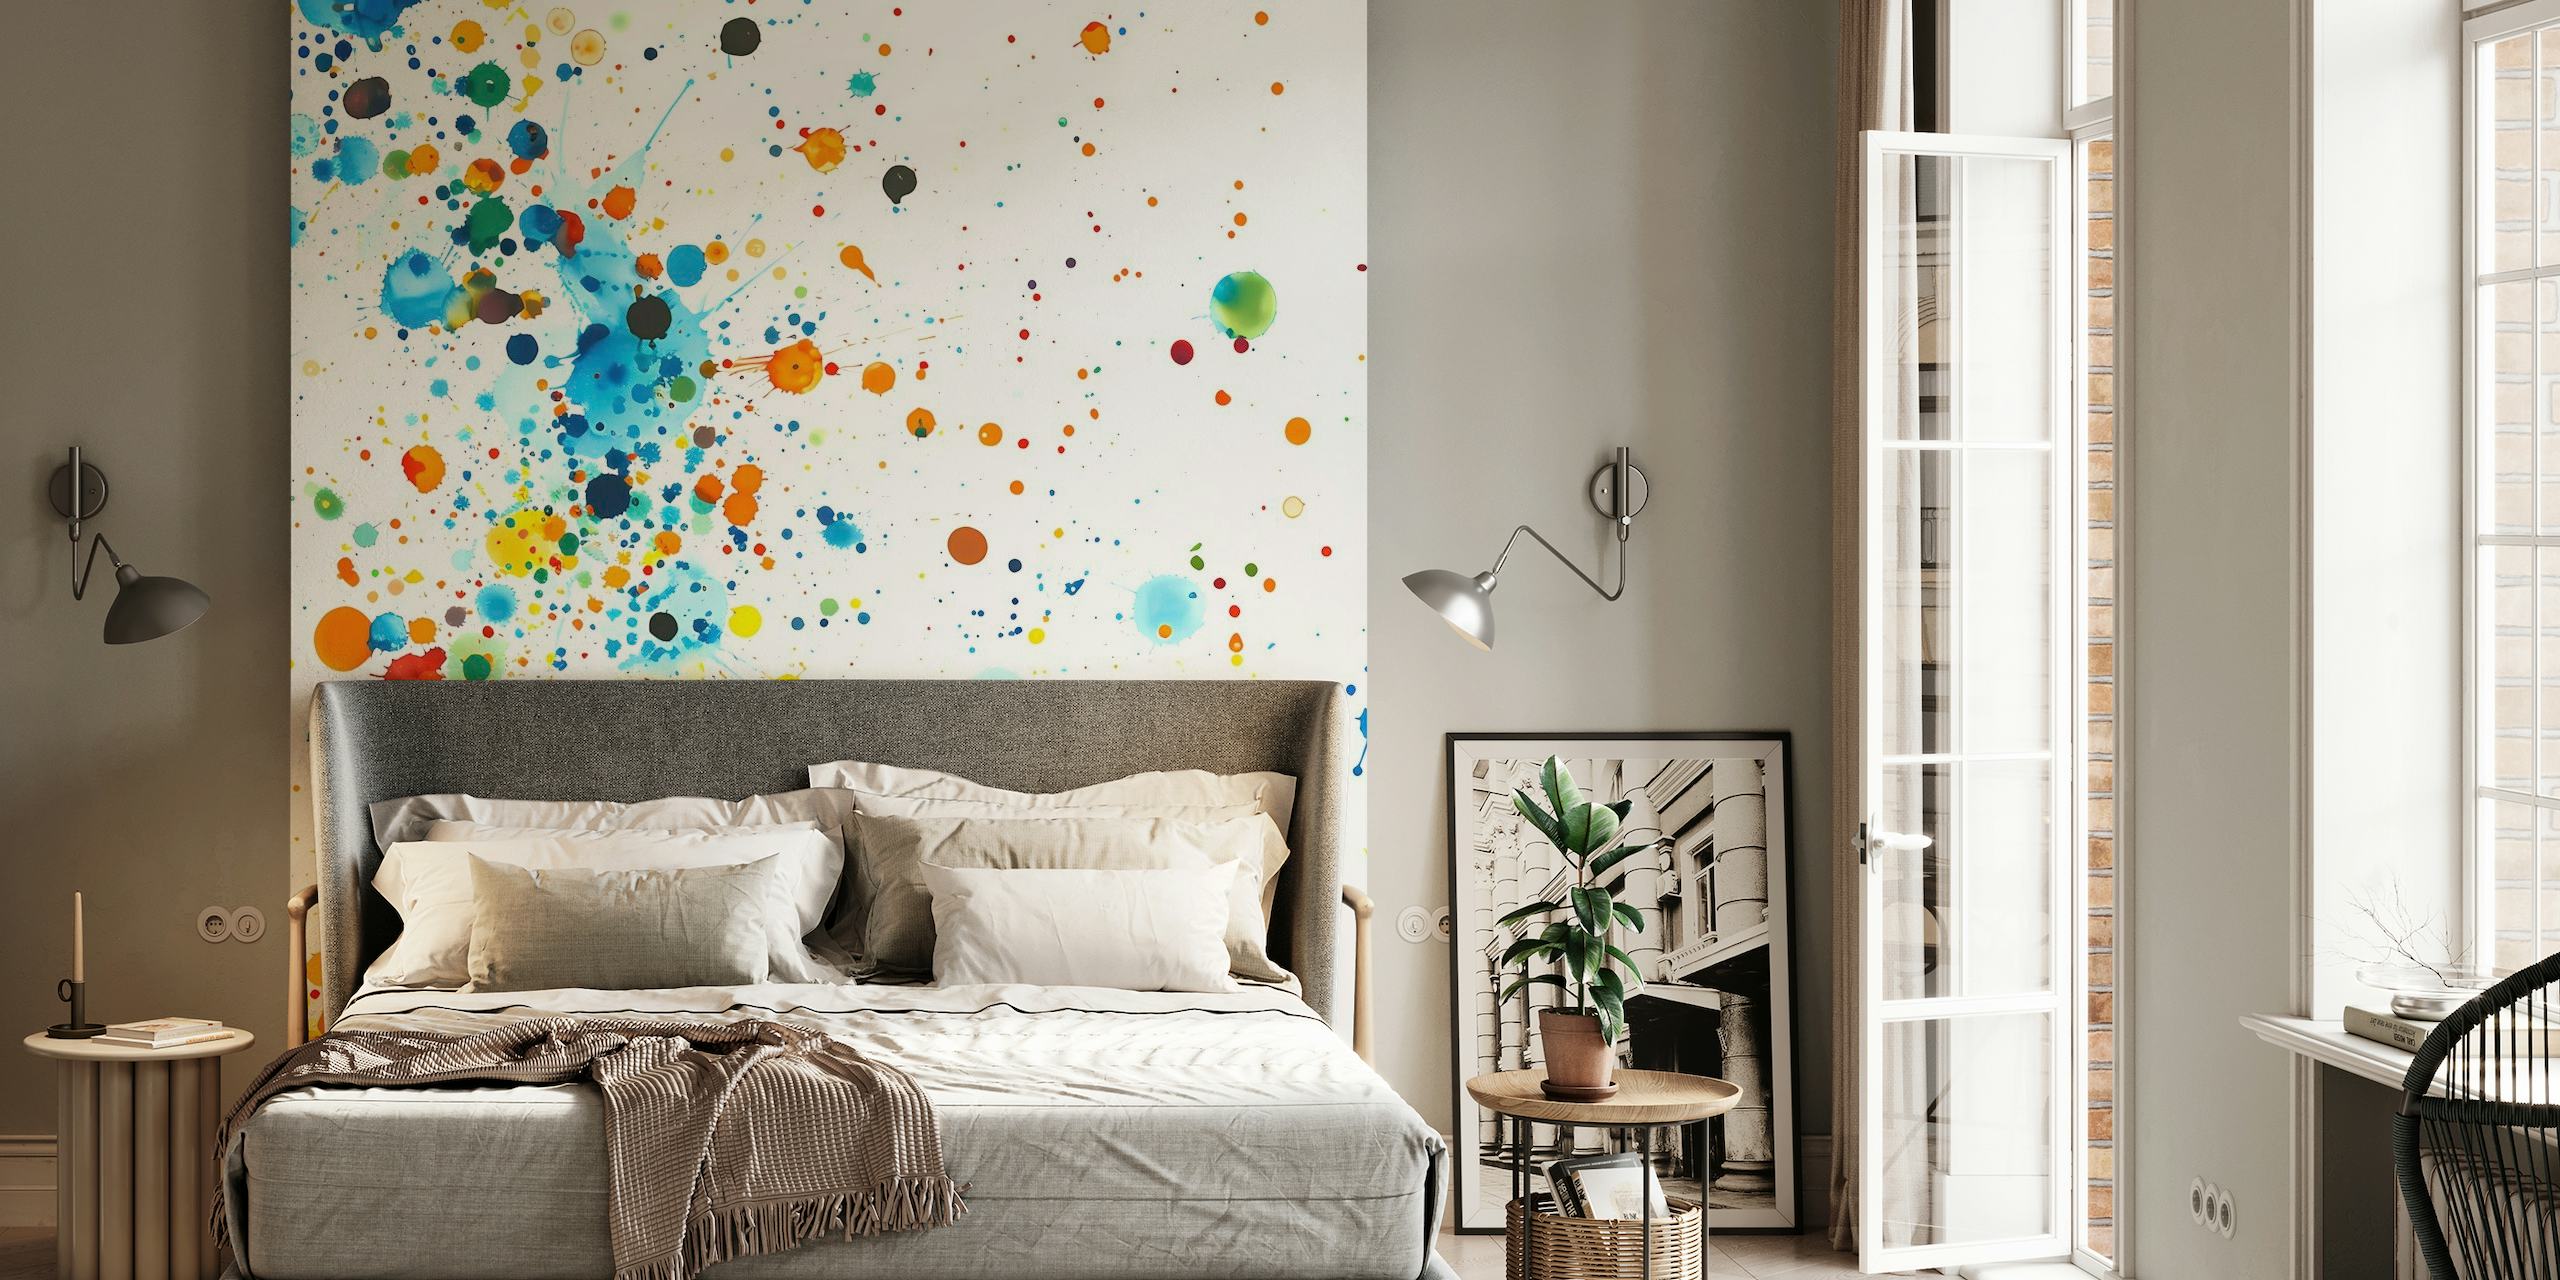 Pintura colorida espirra mural de parede repleto de tons vibrantes em um fundo branco